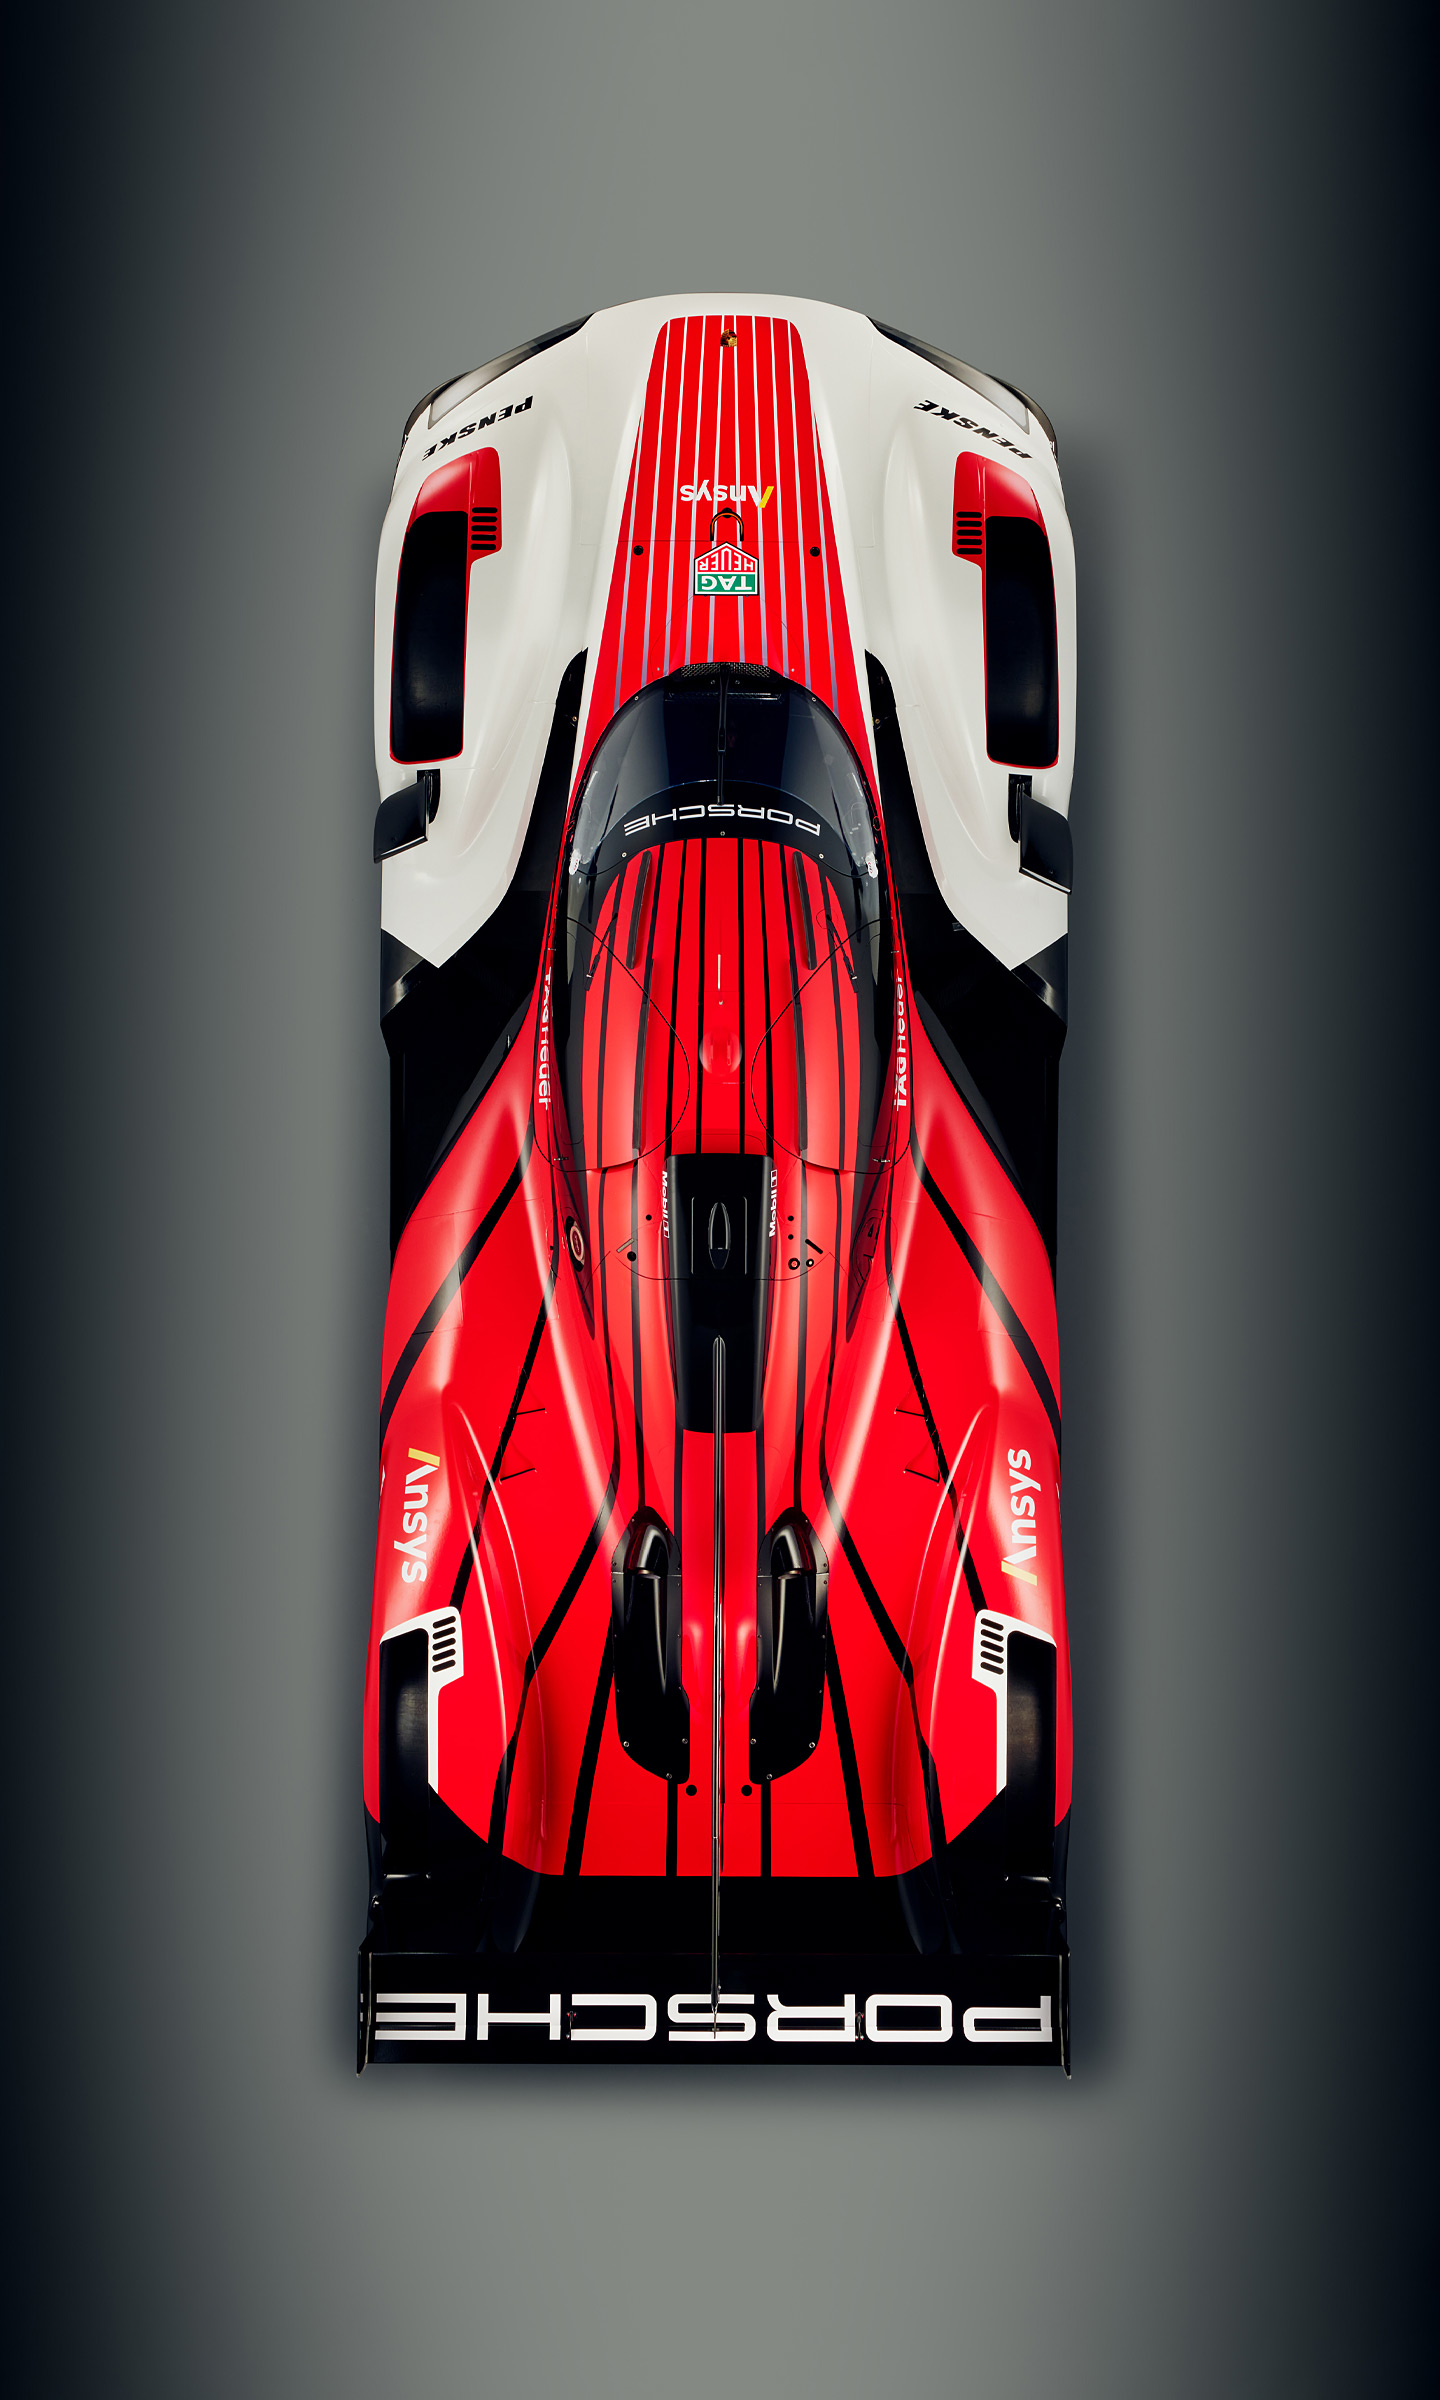  2023 Porsche 963 LMDh Wallpaper.